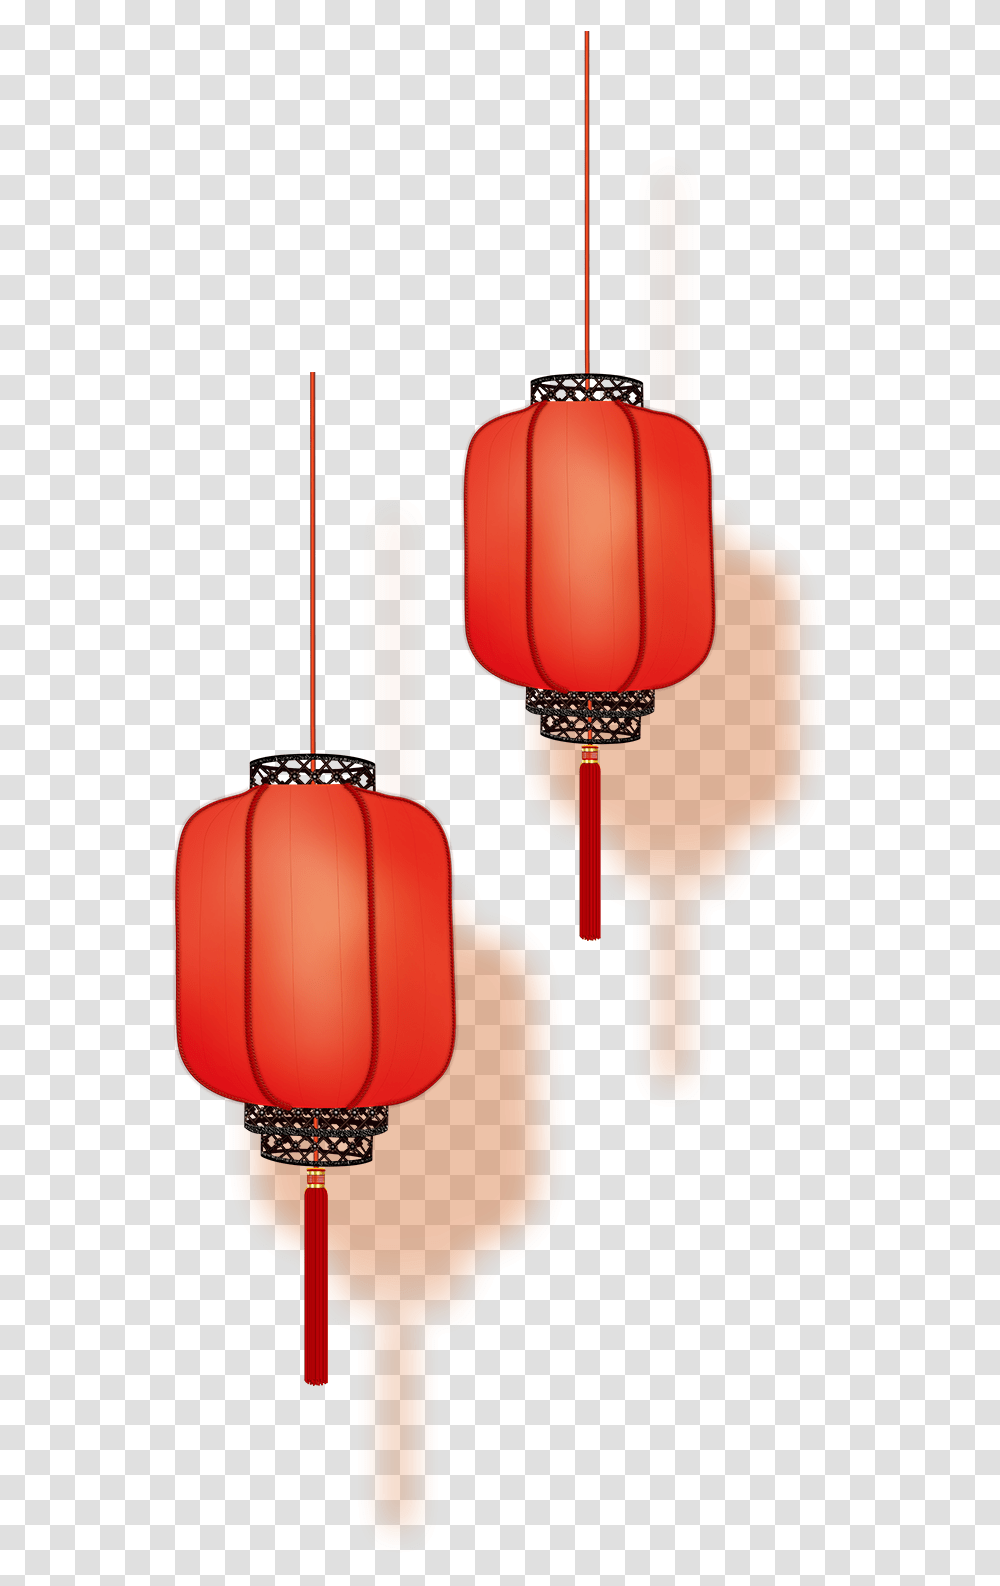 Japanese Lantern Chinese Lantern, Lamp, Luggage, Dynamite, Bomb Transparent Png